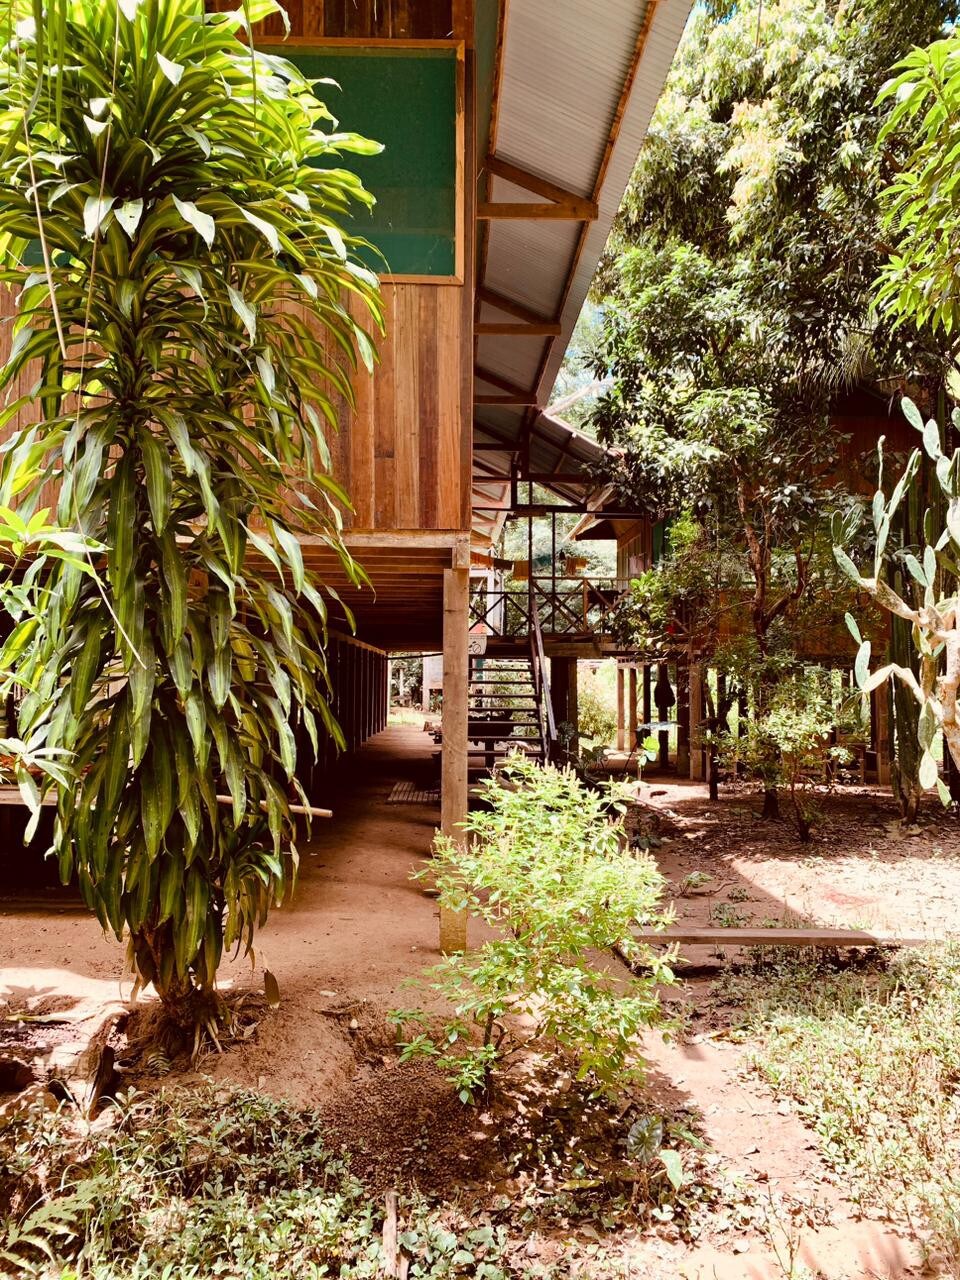 Lovely room in a reforestation center-Mashonaste